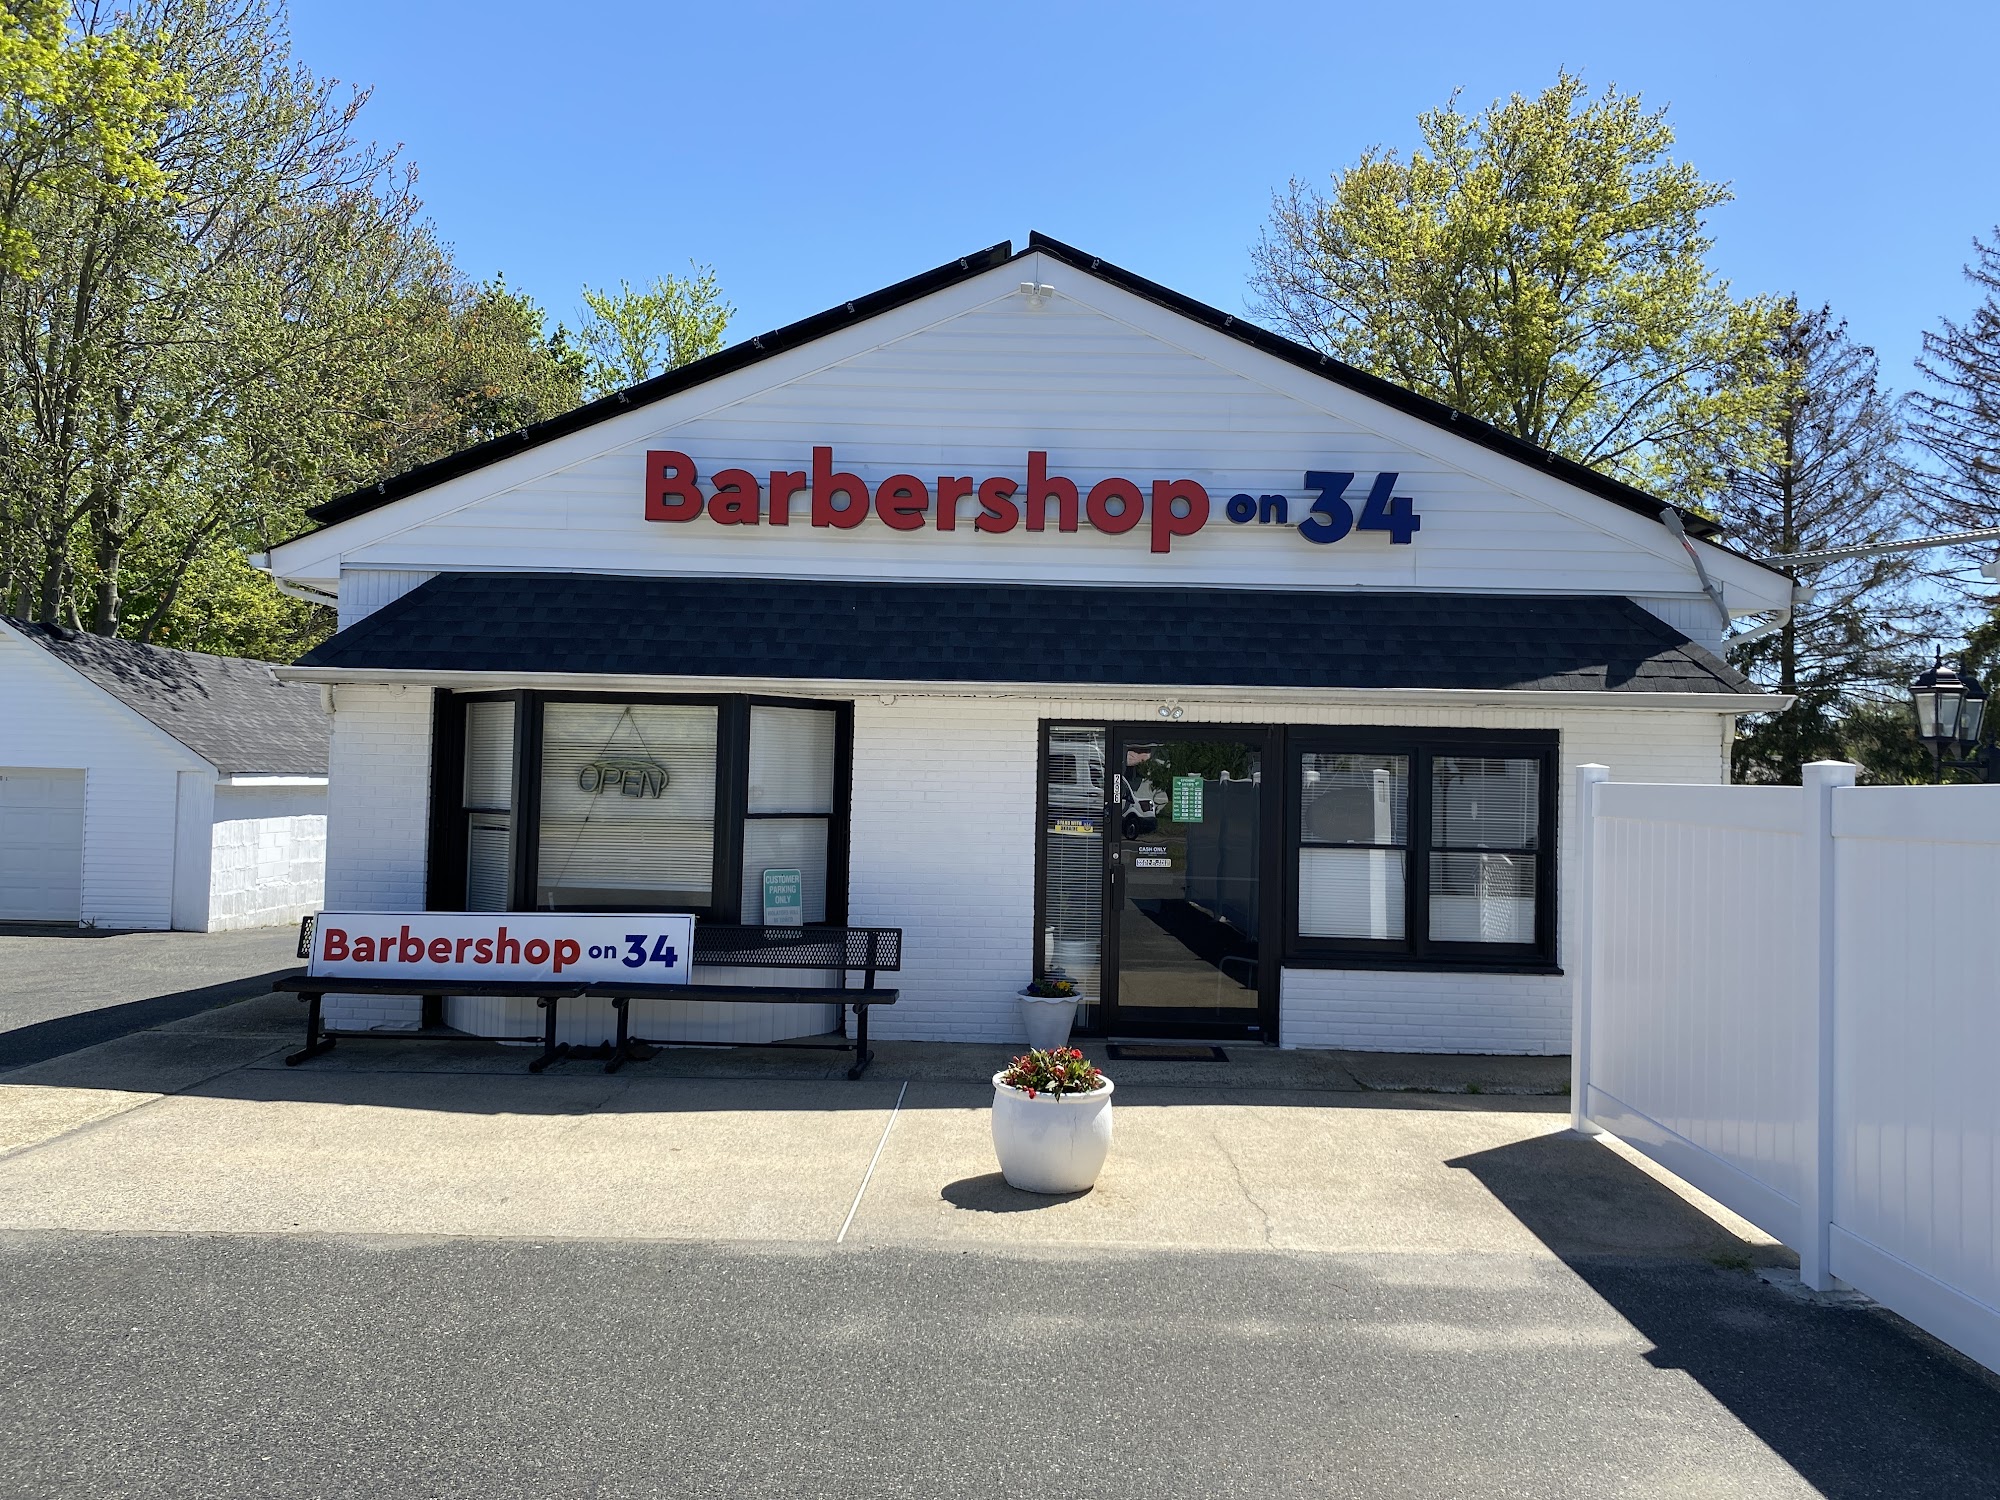 Barbershop on 34